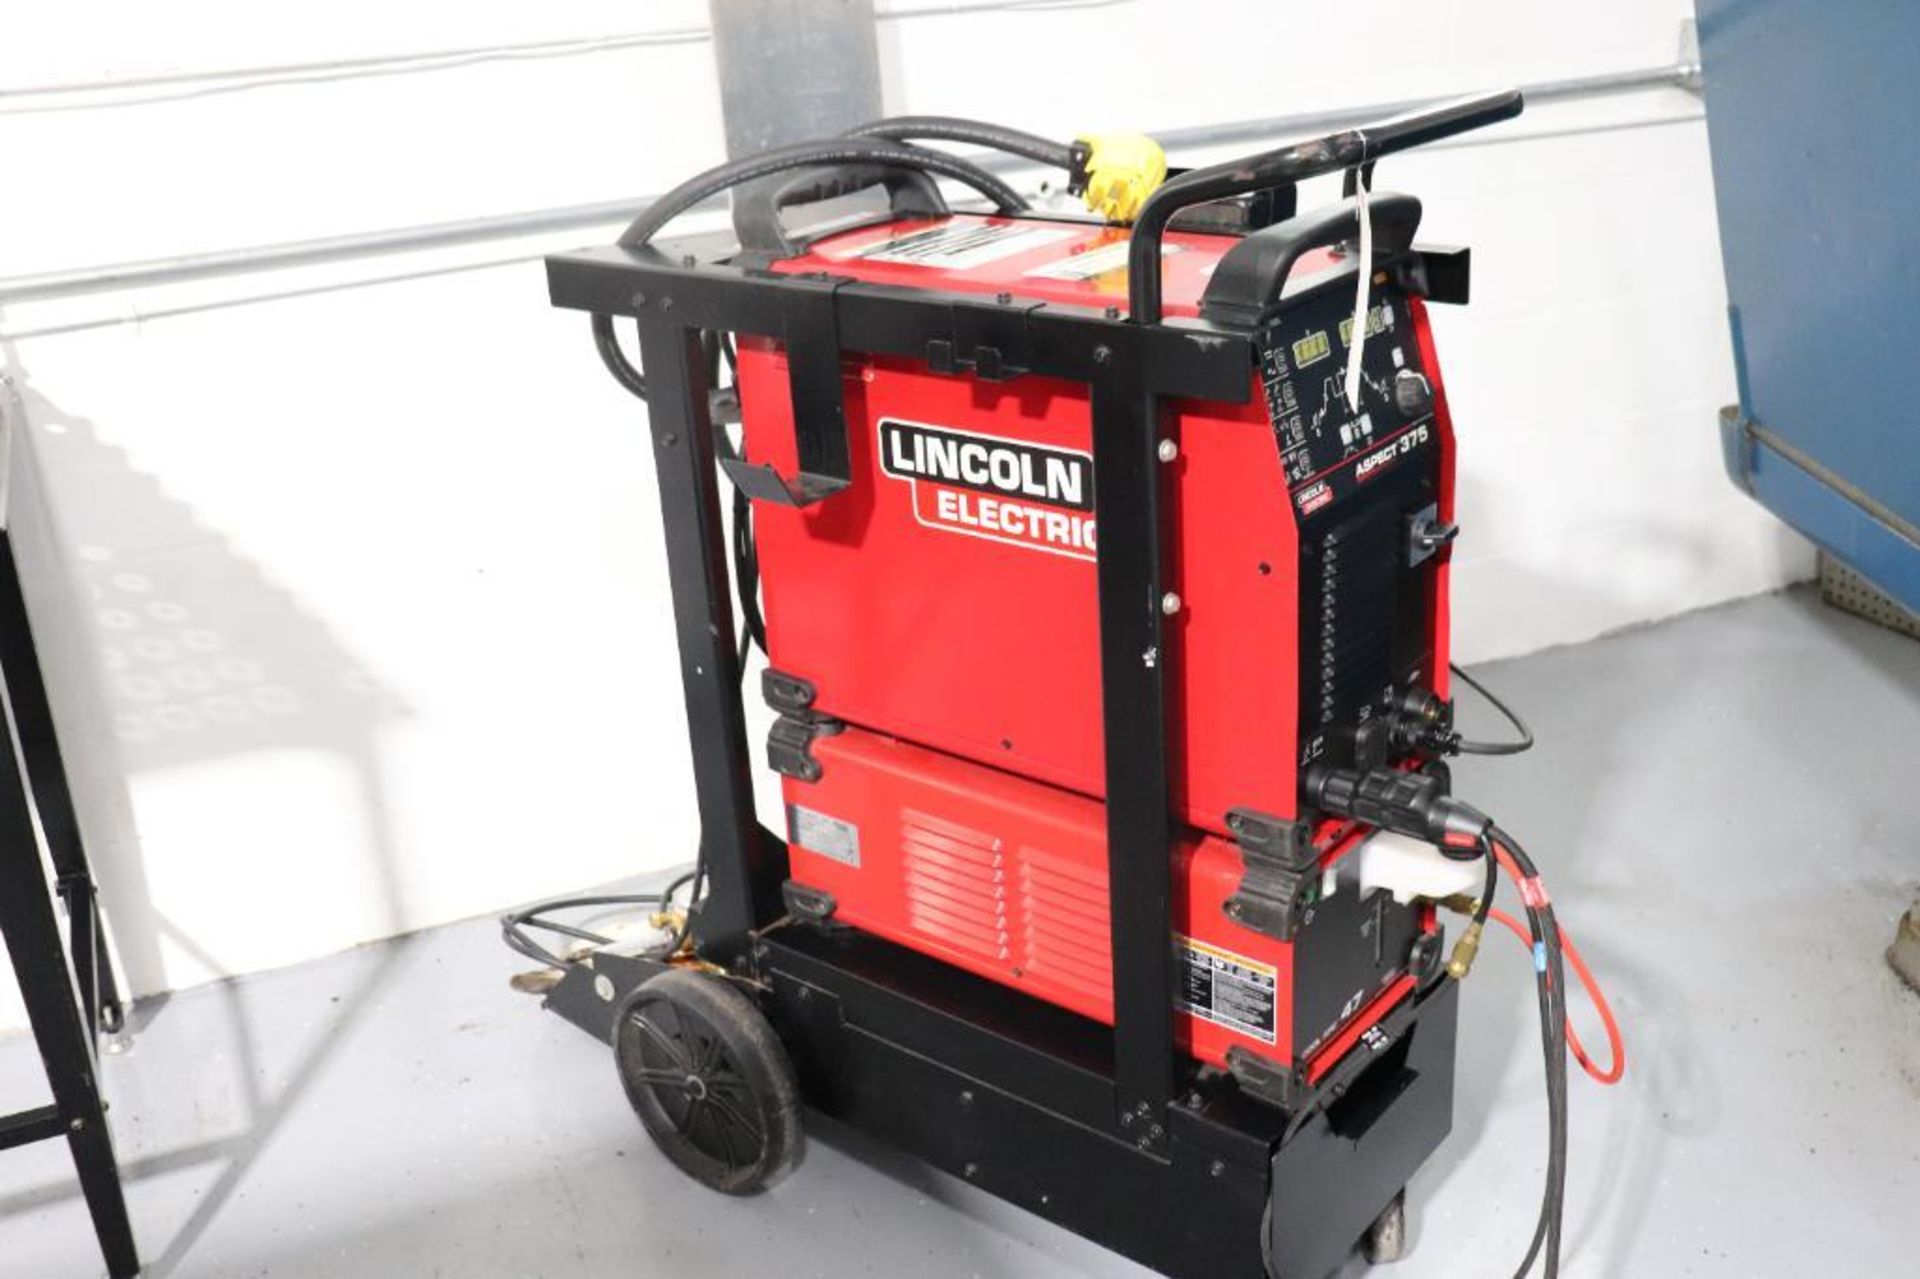 Lincoln Aspect 375 Tig welder w/ chiller, torch & cart